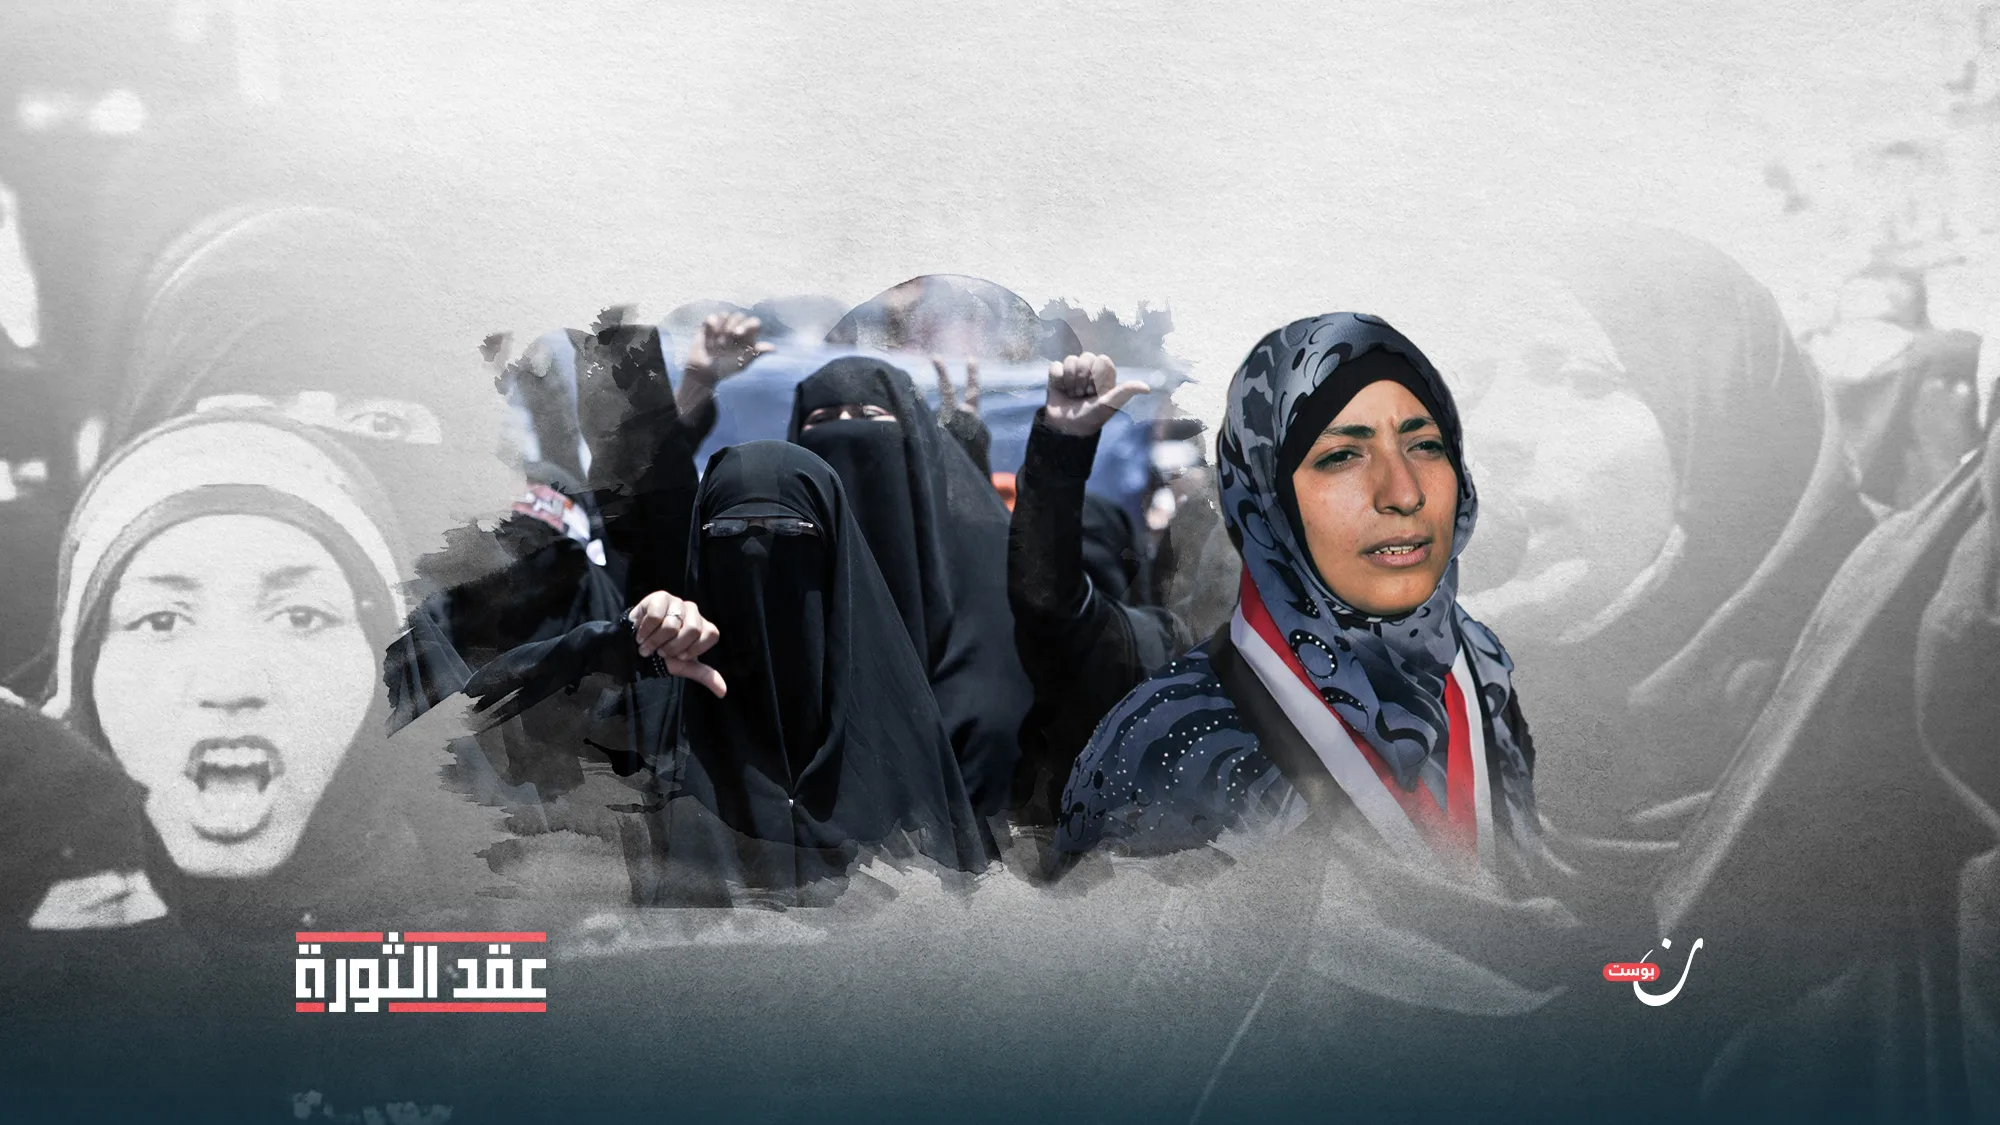 عشرية-الثورة-اليمنية-المرأة-تعيد-اكتشاف-نفسها-سياسيًا